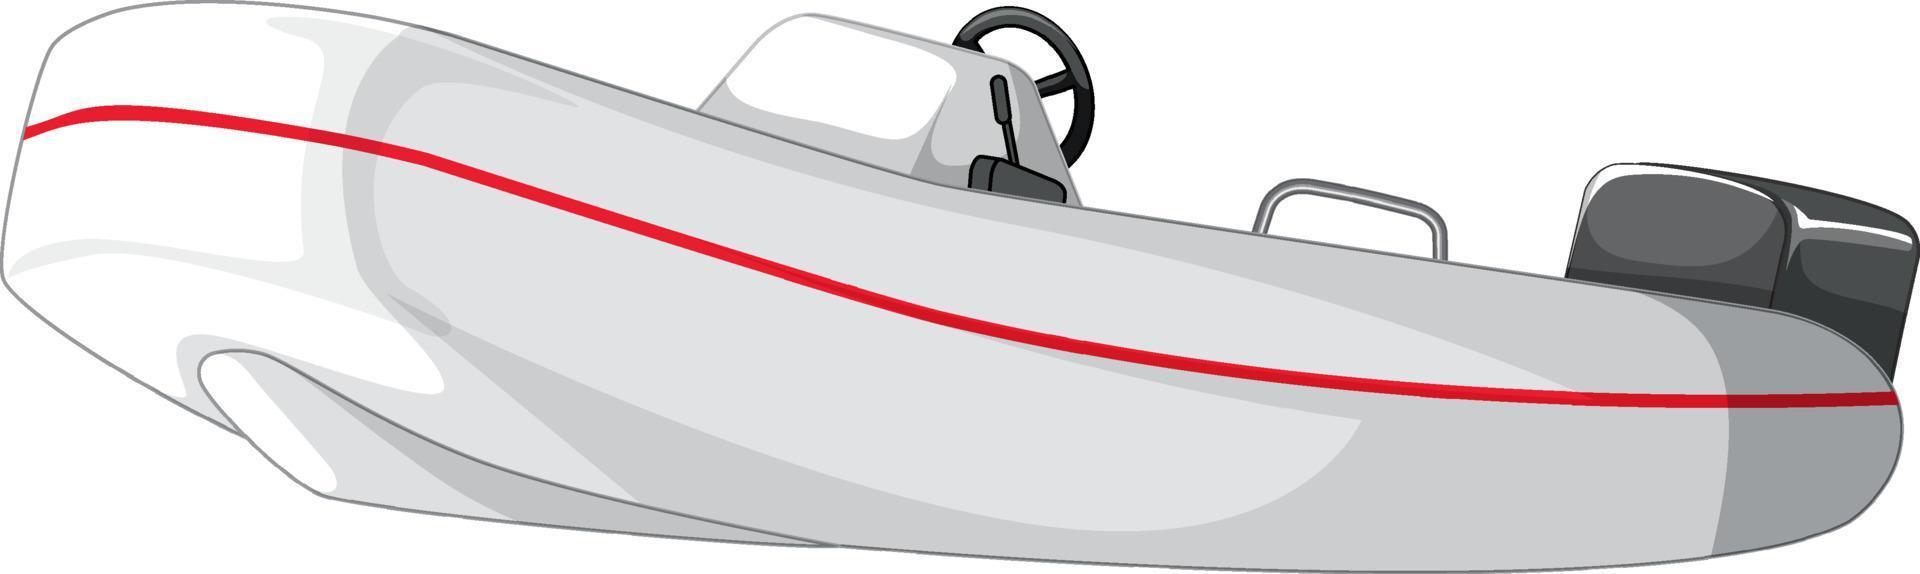 motorbåt eller motorbåt isolerad på vit bakgrund vektor